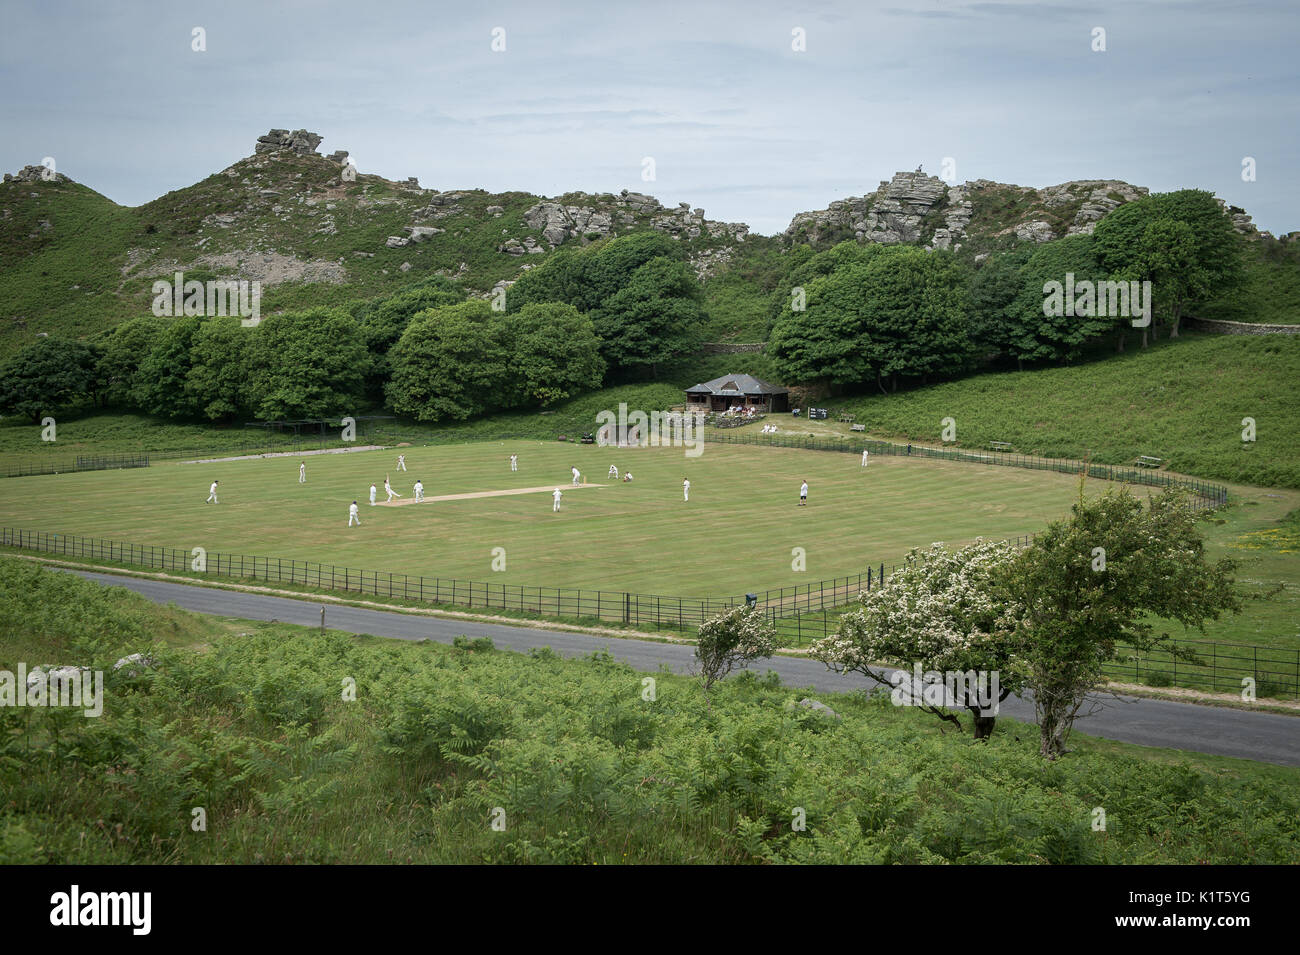 Das jährliche Freundschaftsspiel zwischen Cravens Cavaliers und Lynton & Lynmouth Cricket Club wird am Samstag, den 5. August 2017, auf dem Gelände im Valley of Rocks, North Devon, ausgetragen Stockfoto